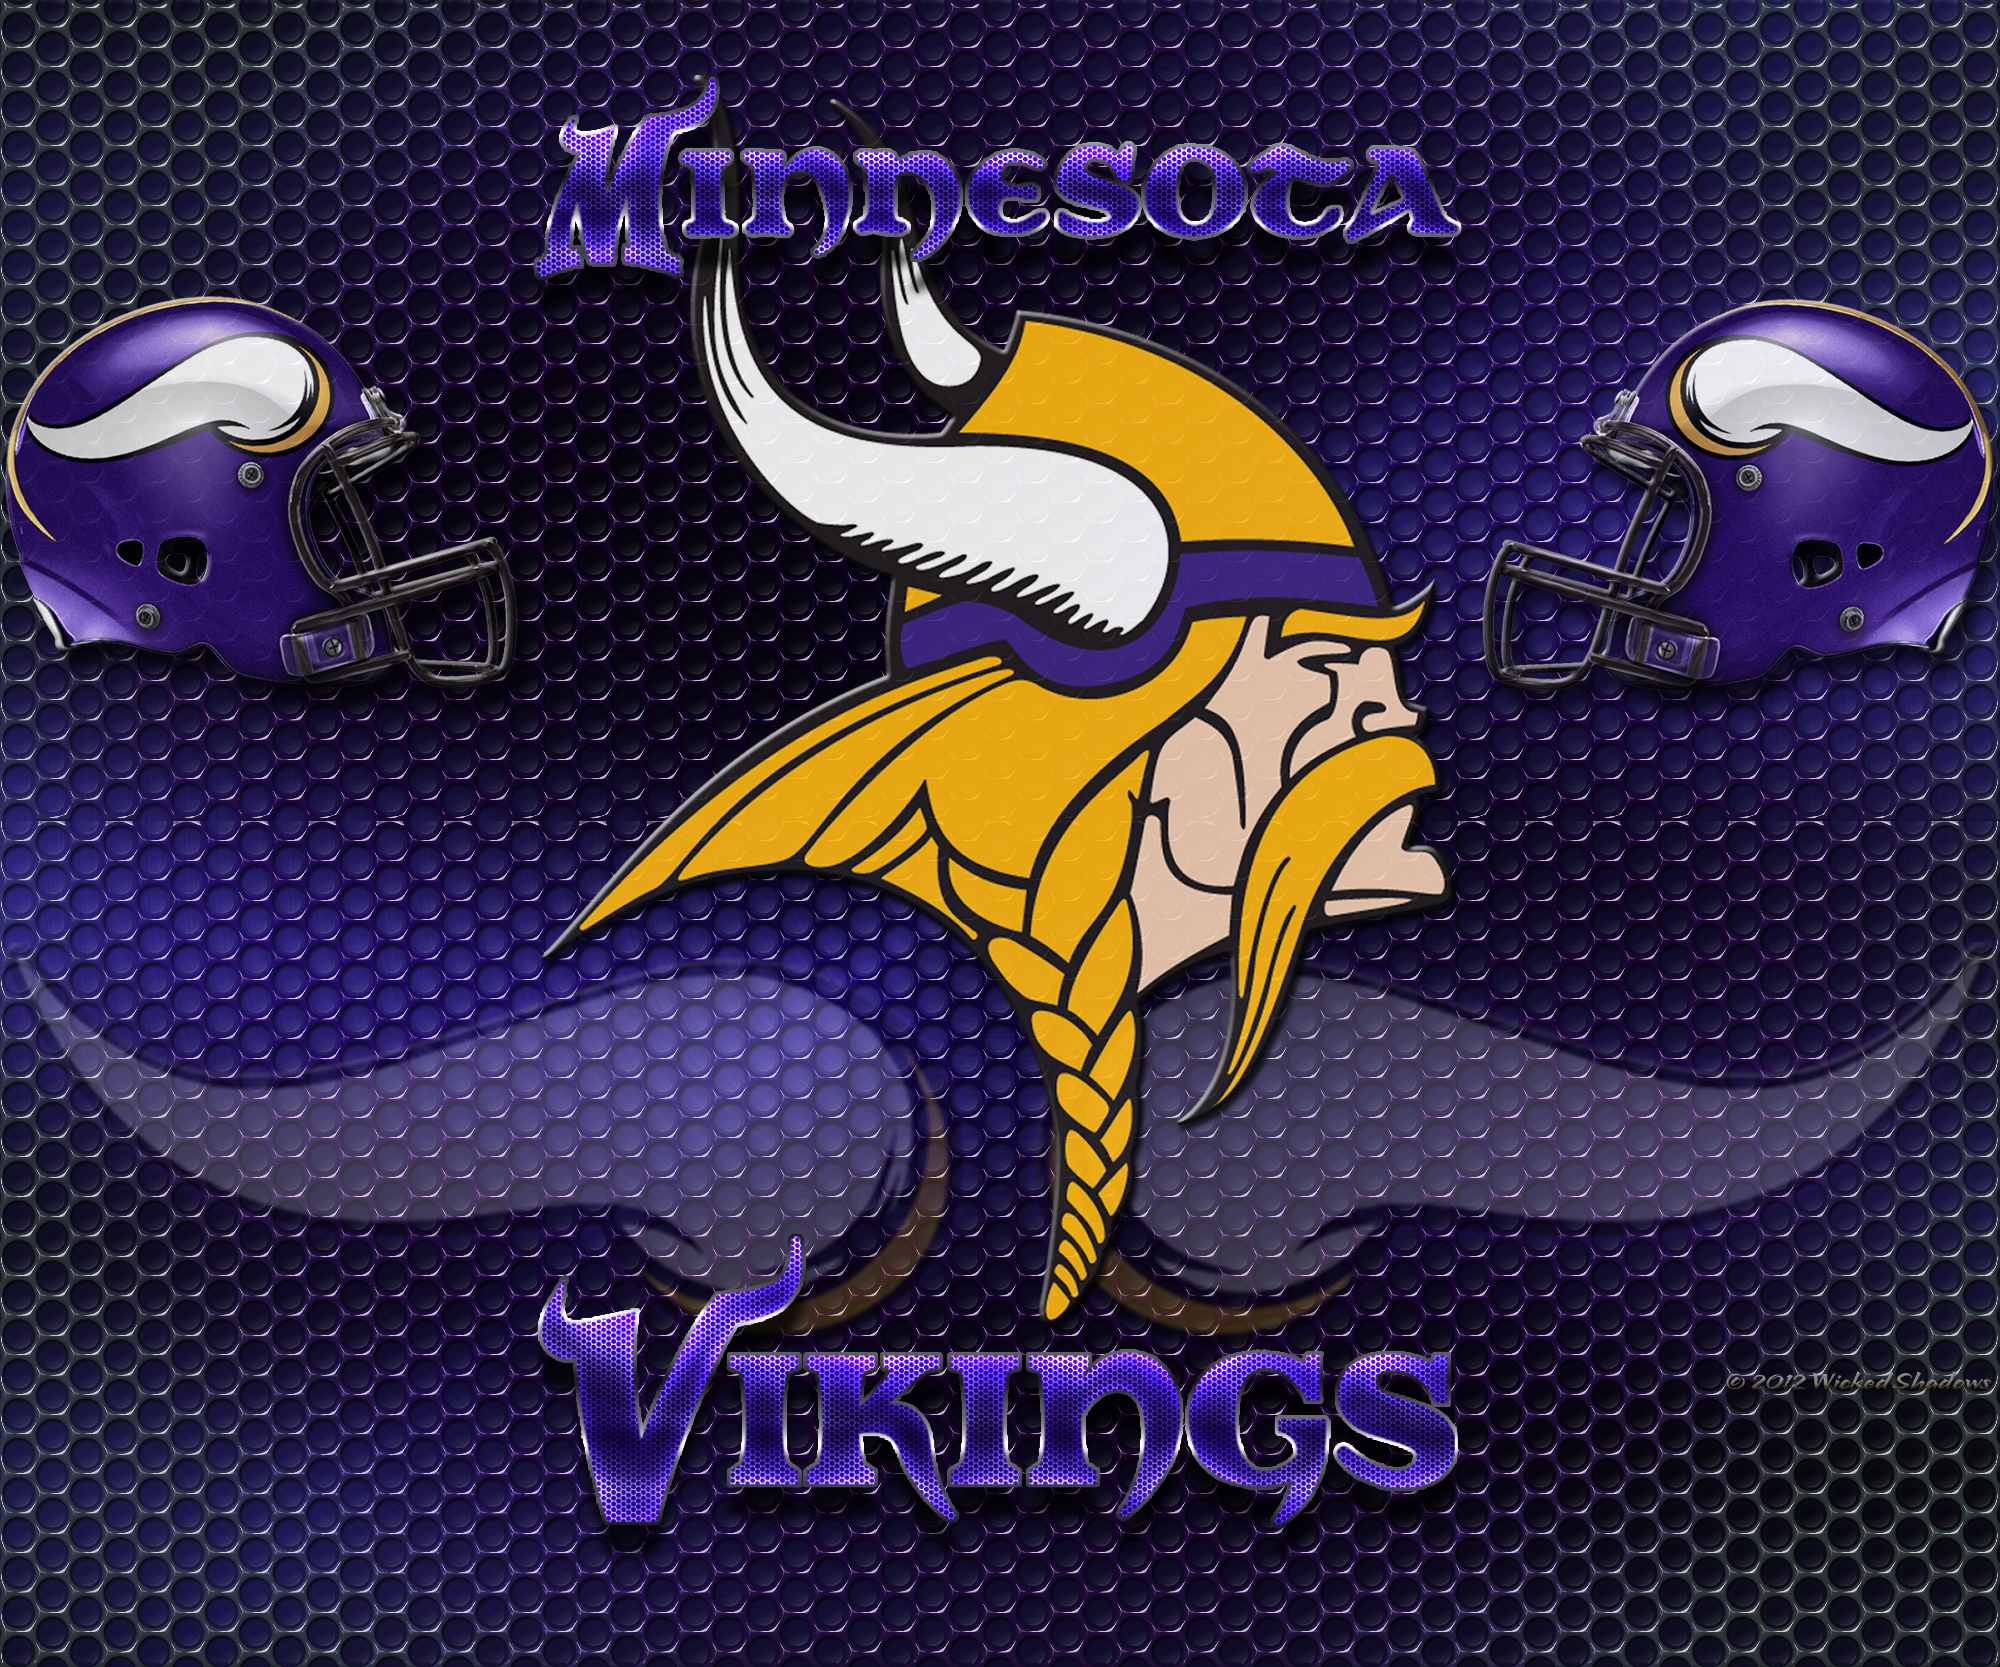 Minnesota Vikings Nfl Football Tq Wallpaper Background